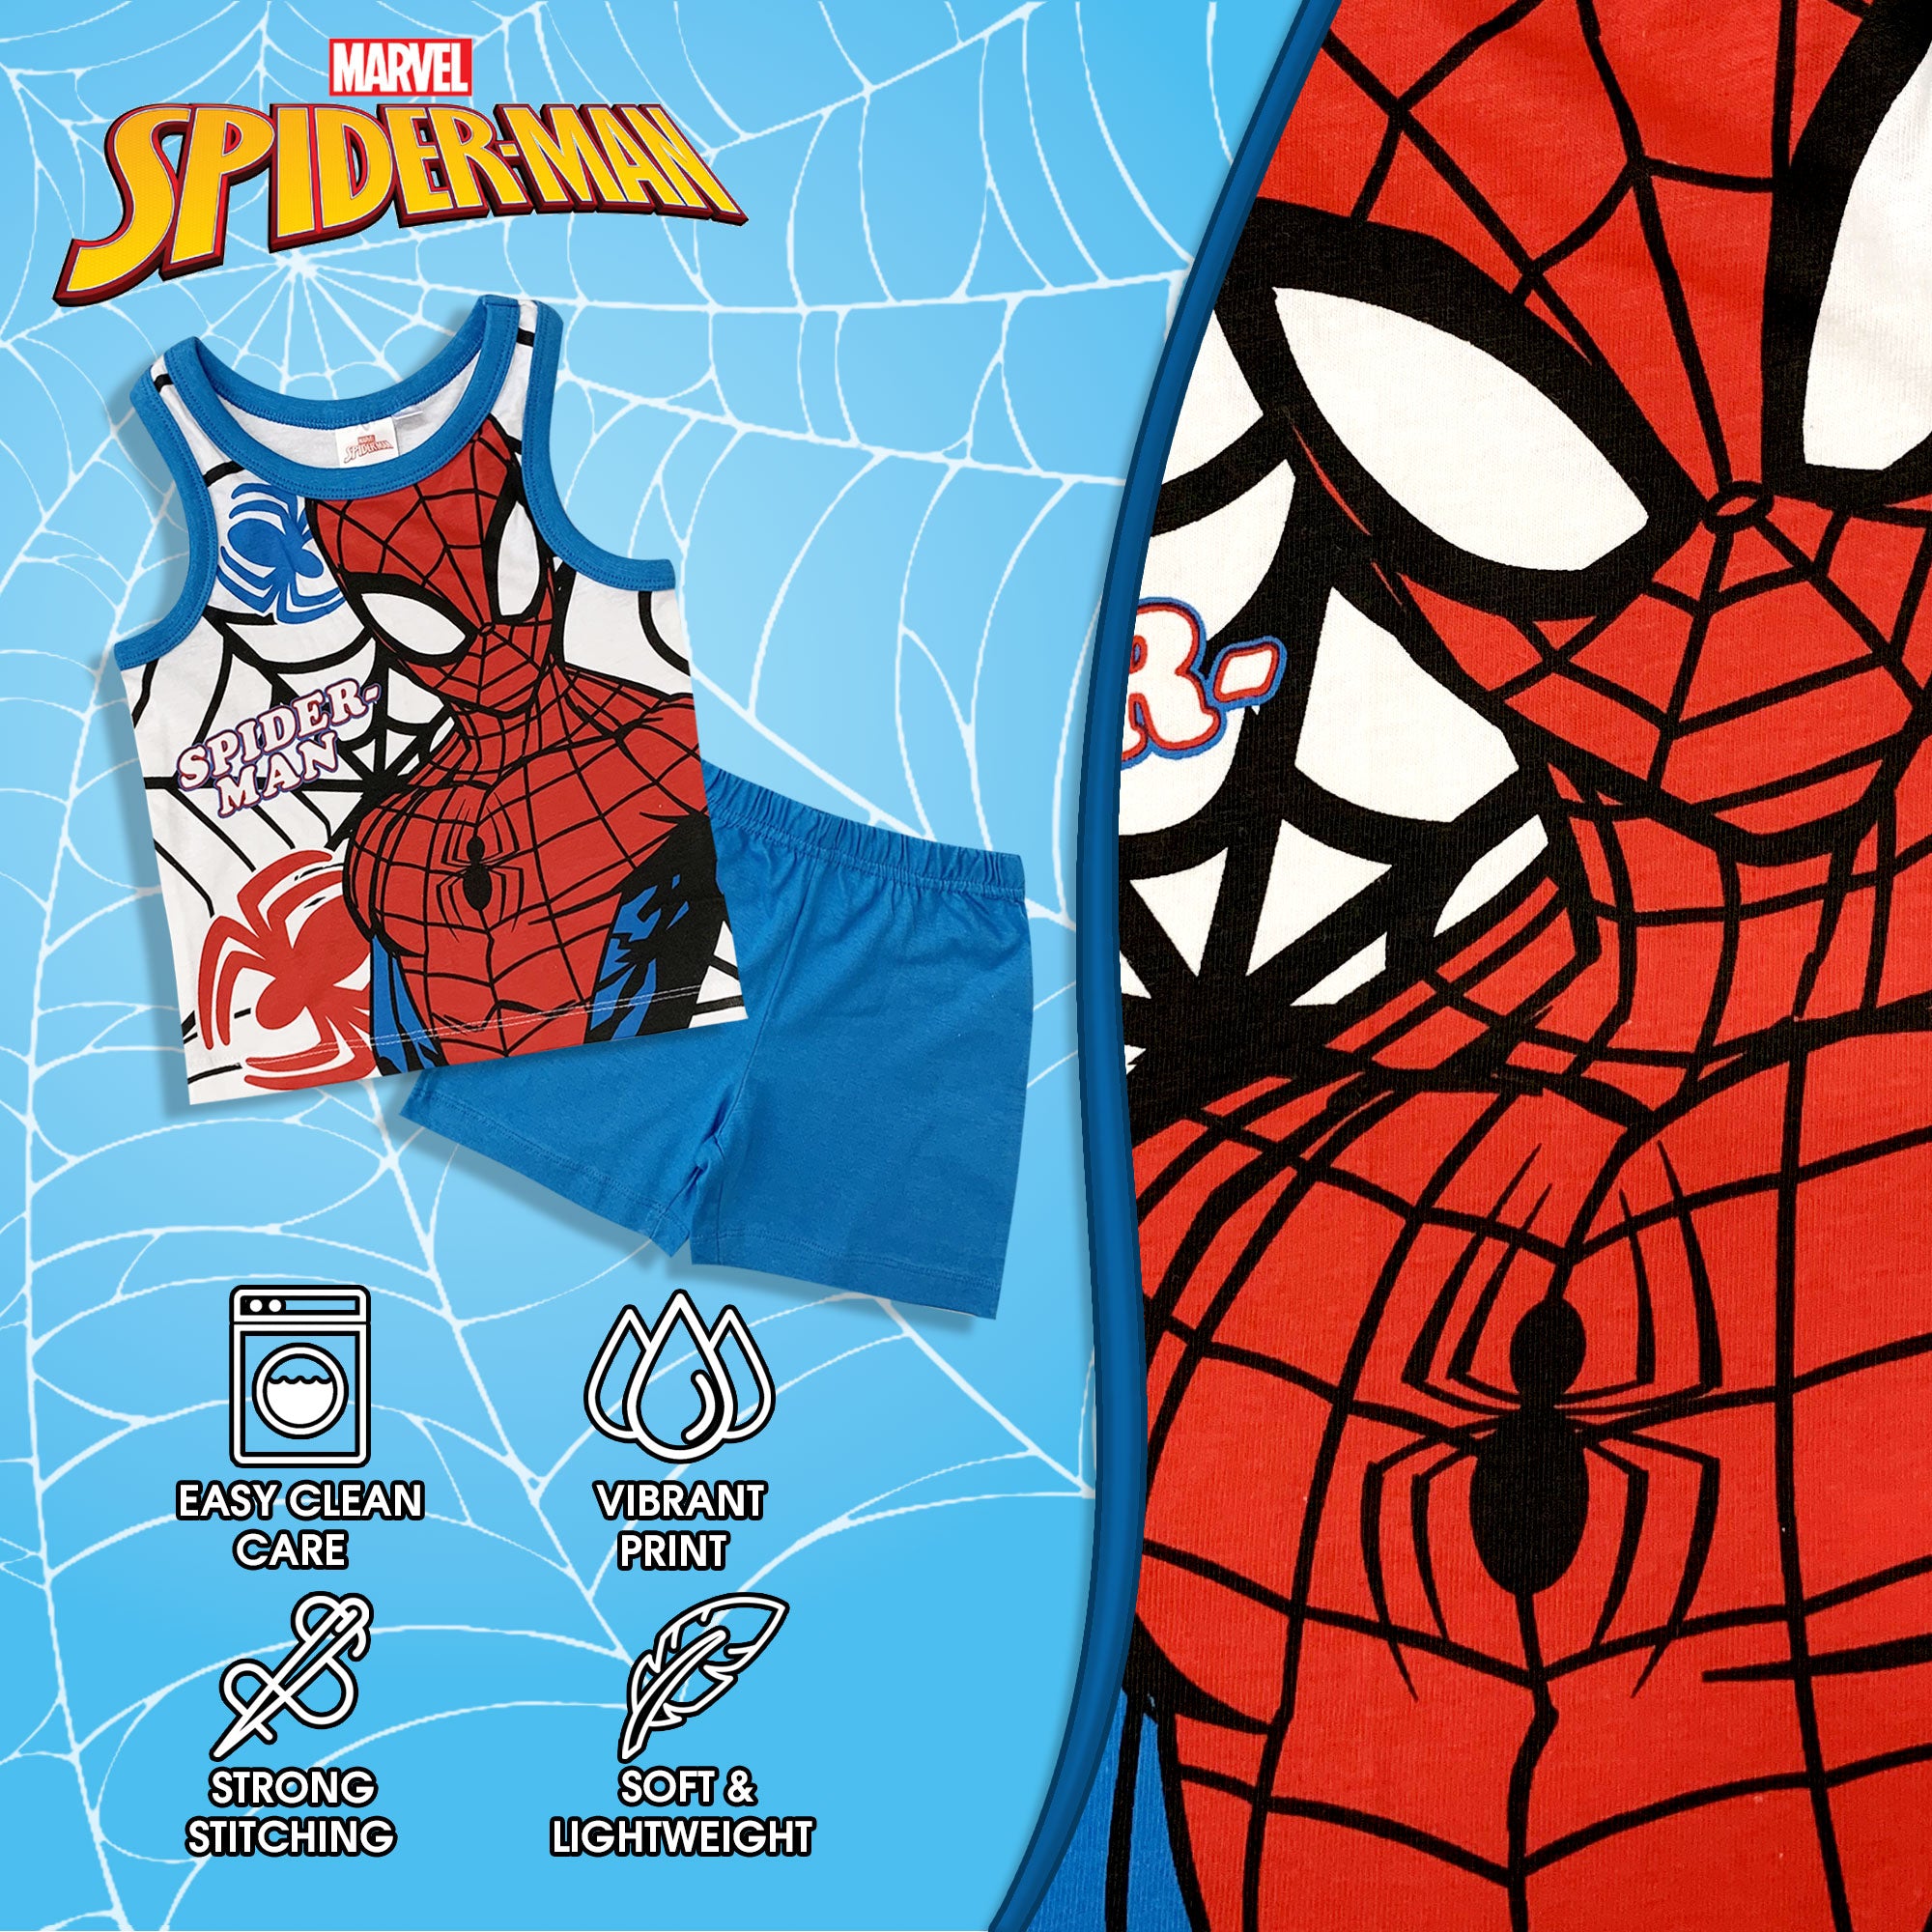 Pigiama bambino Marvel Spiderman canotta e pantaloncino in cotone stampato 6031